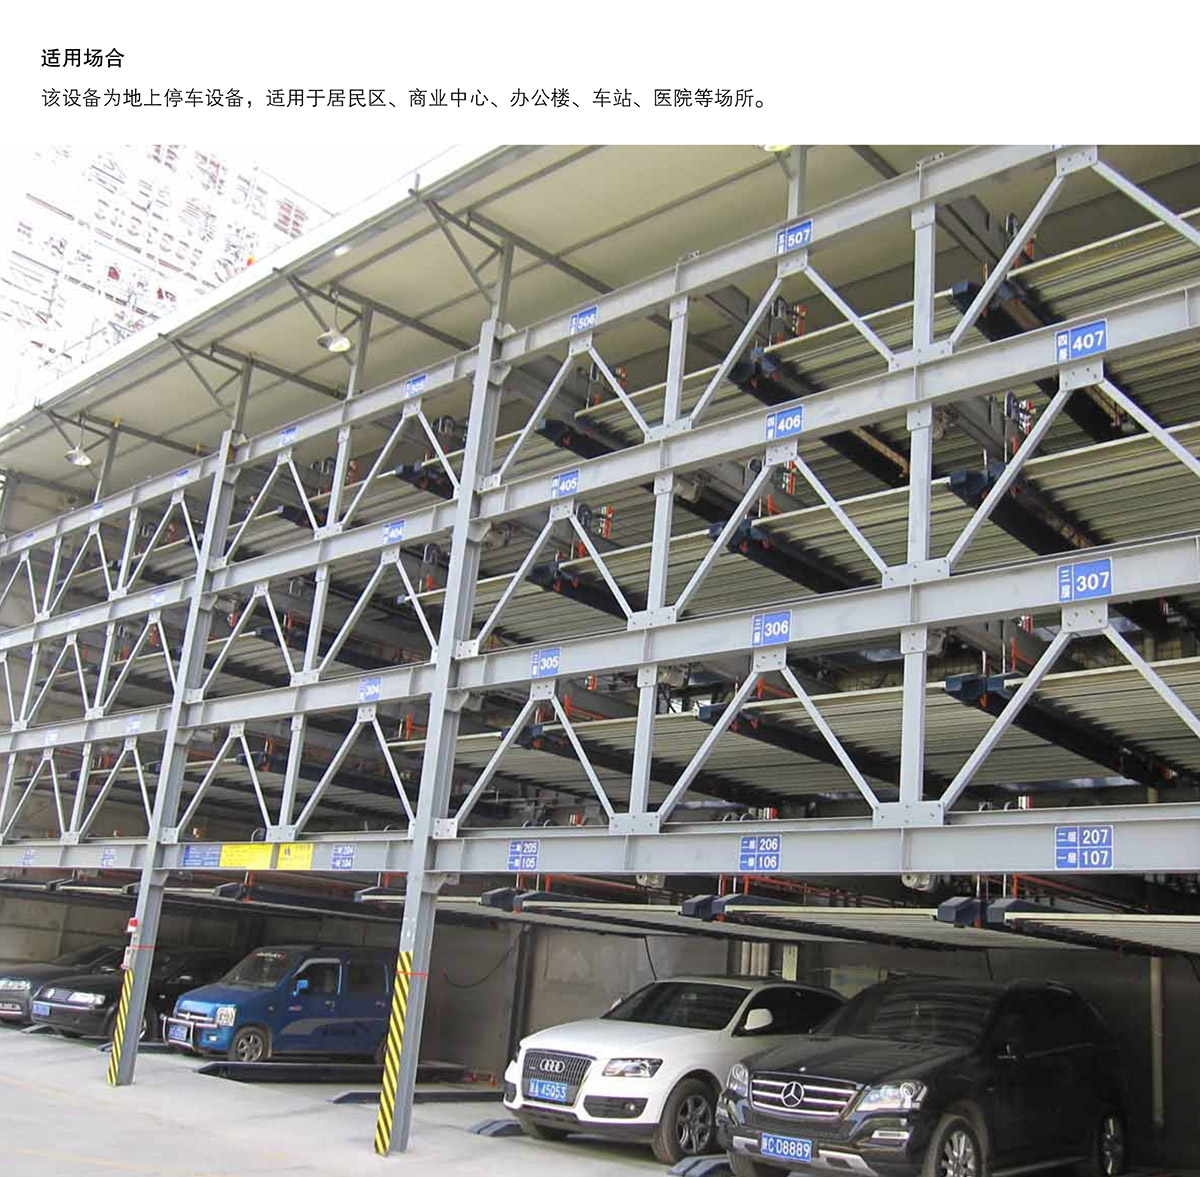 机械车库四至六层PSH4-6升降横移机械停车设备适用场合.jpg